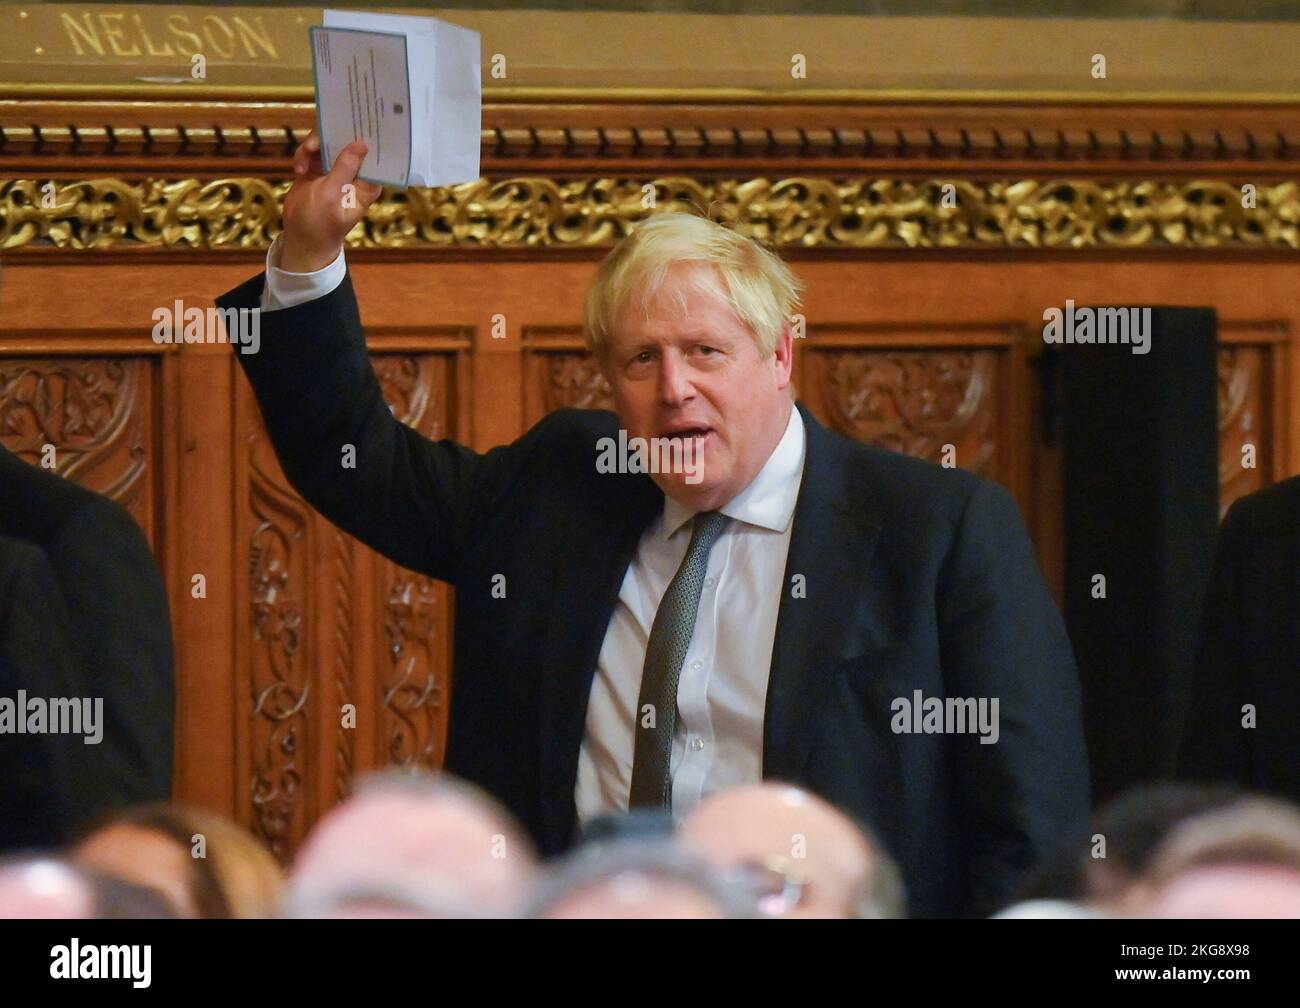 El ex primer ministro Boris Johnson Gestures, delante del presidente Cyril Ramaphosa de Sudáfrica, se dirigió a parlamentarios y compañeros en la Royal Gallery del Palacio de Westminster en Londres, como parte de su visita de Estado al Reino Unido. Fecha de la foto: Martes 22 de noviembre de 2022. Foto de stock